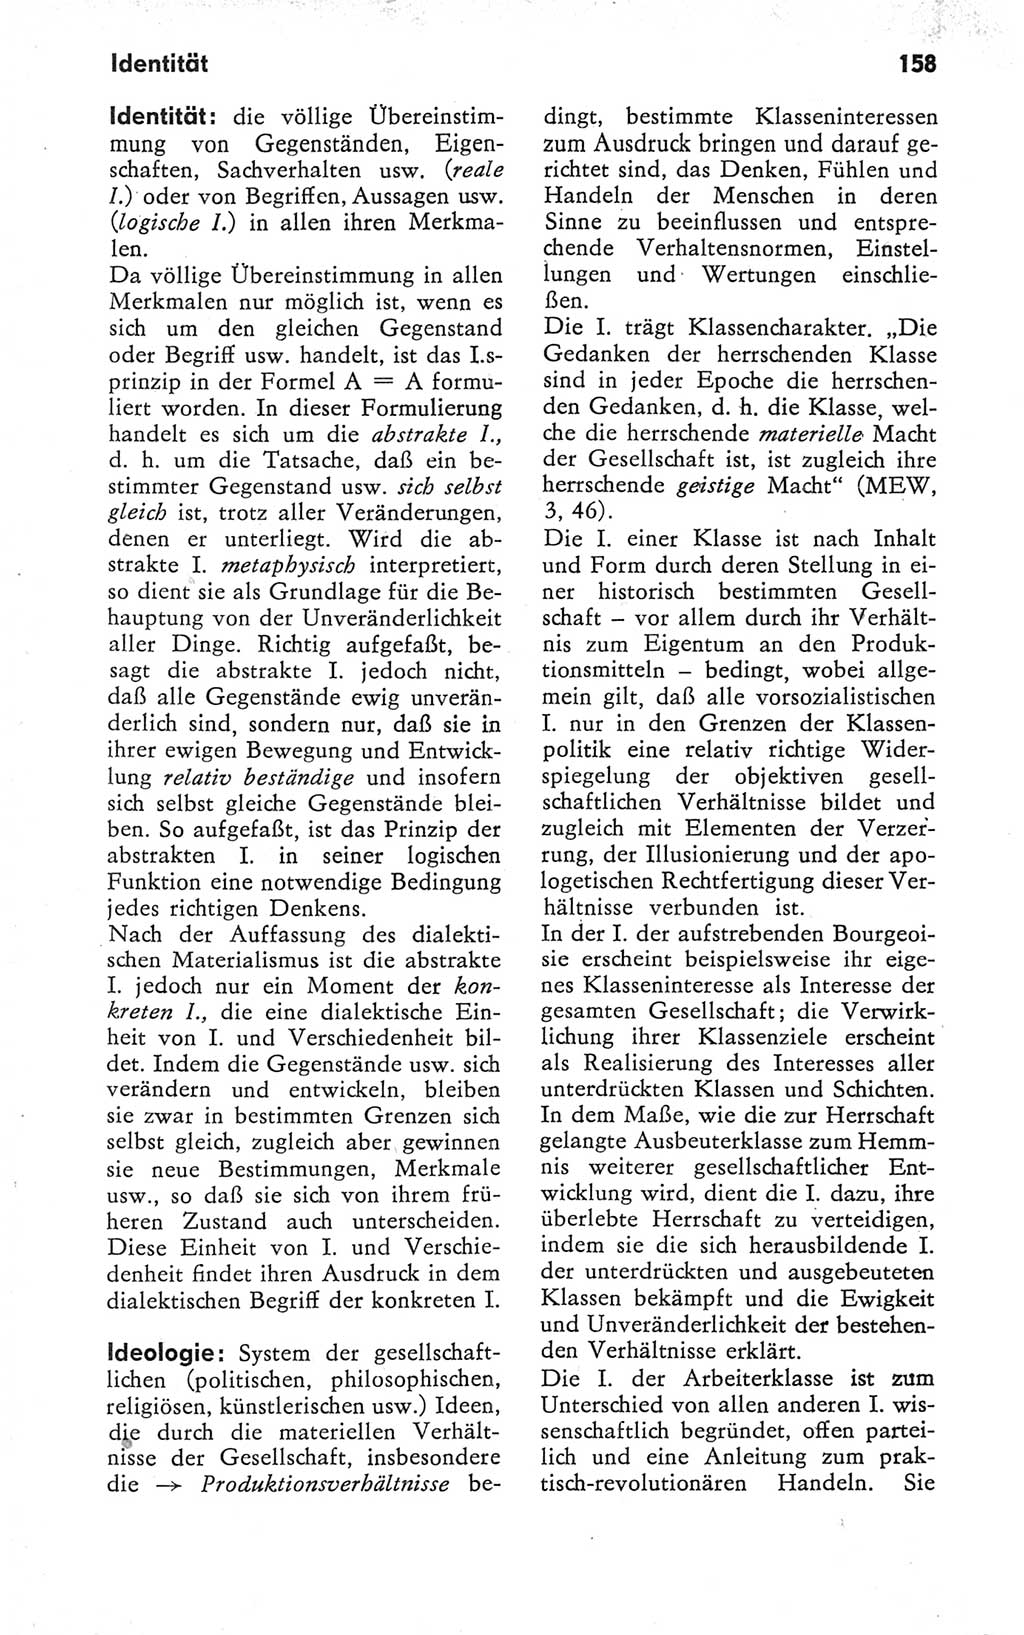 Kleines Wörterbuch der marxistisch-leninistischen Philosophie [Deutsche Demokratische Republik (DDR)] 1979, Seite 158 (Kl. Wb. ML Phil. DDR 1979, S. 158)